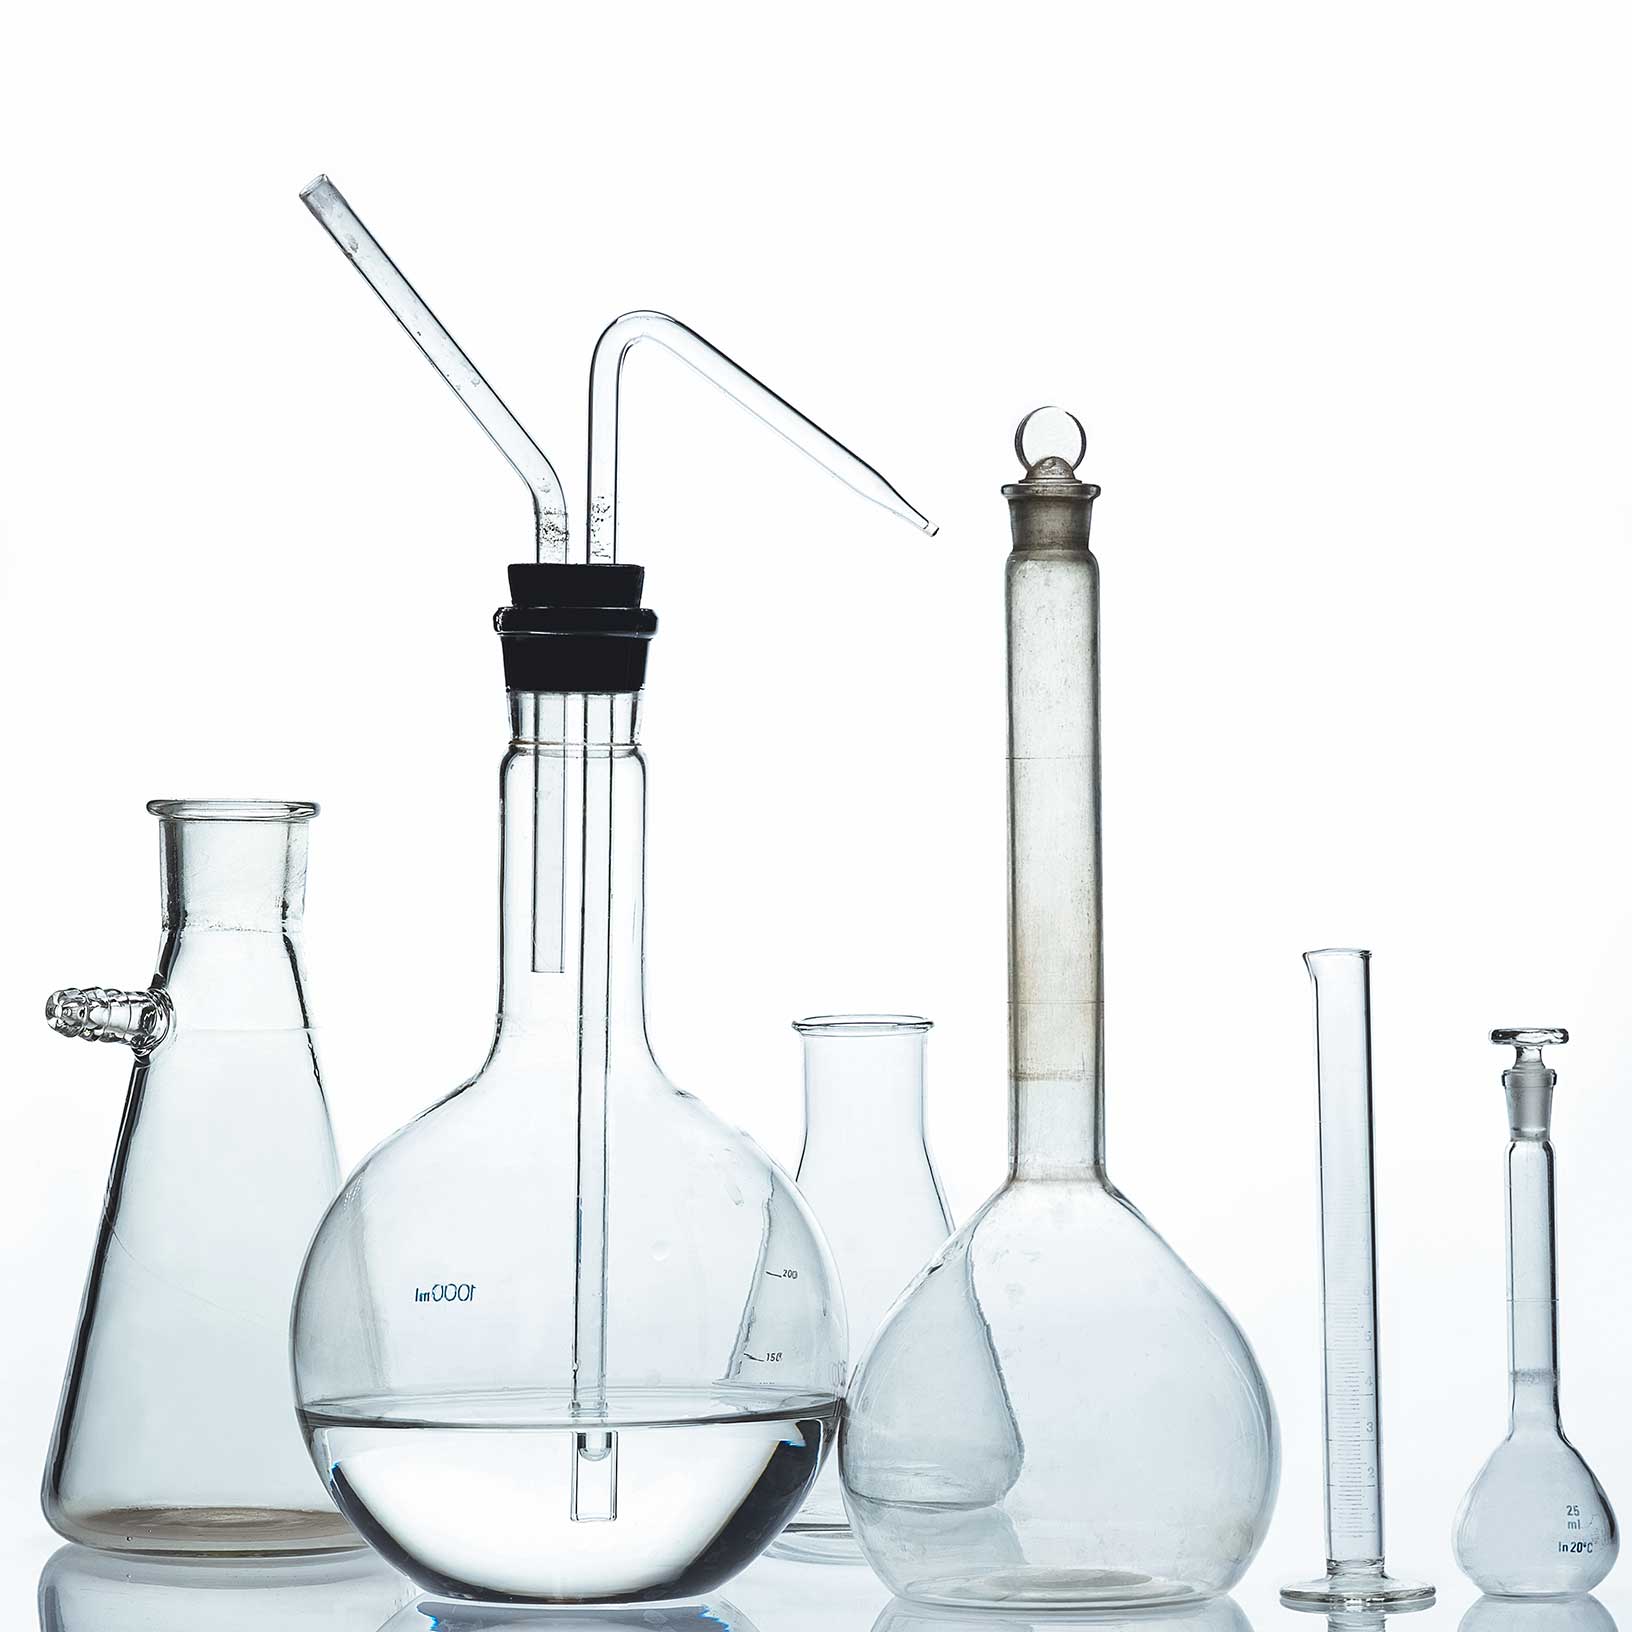 ヘルスケアおよびライフサイエンス産業の研究開発（R&D）で使用されるガラス器具 